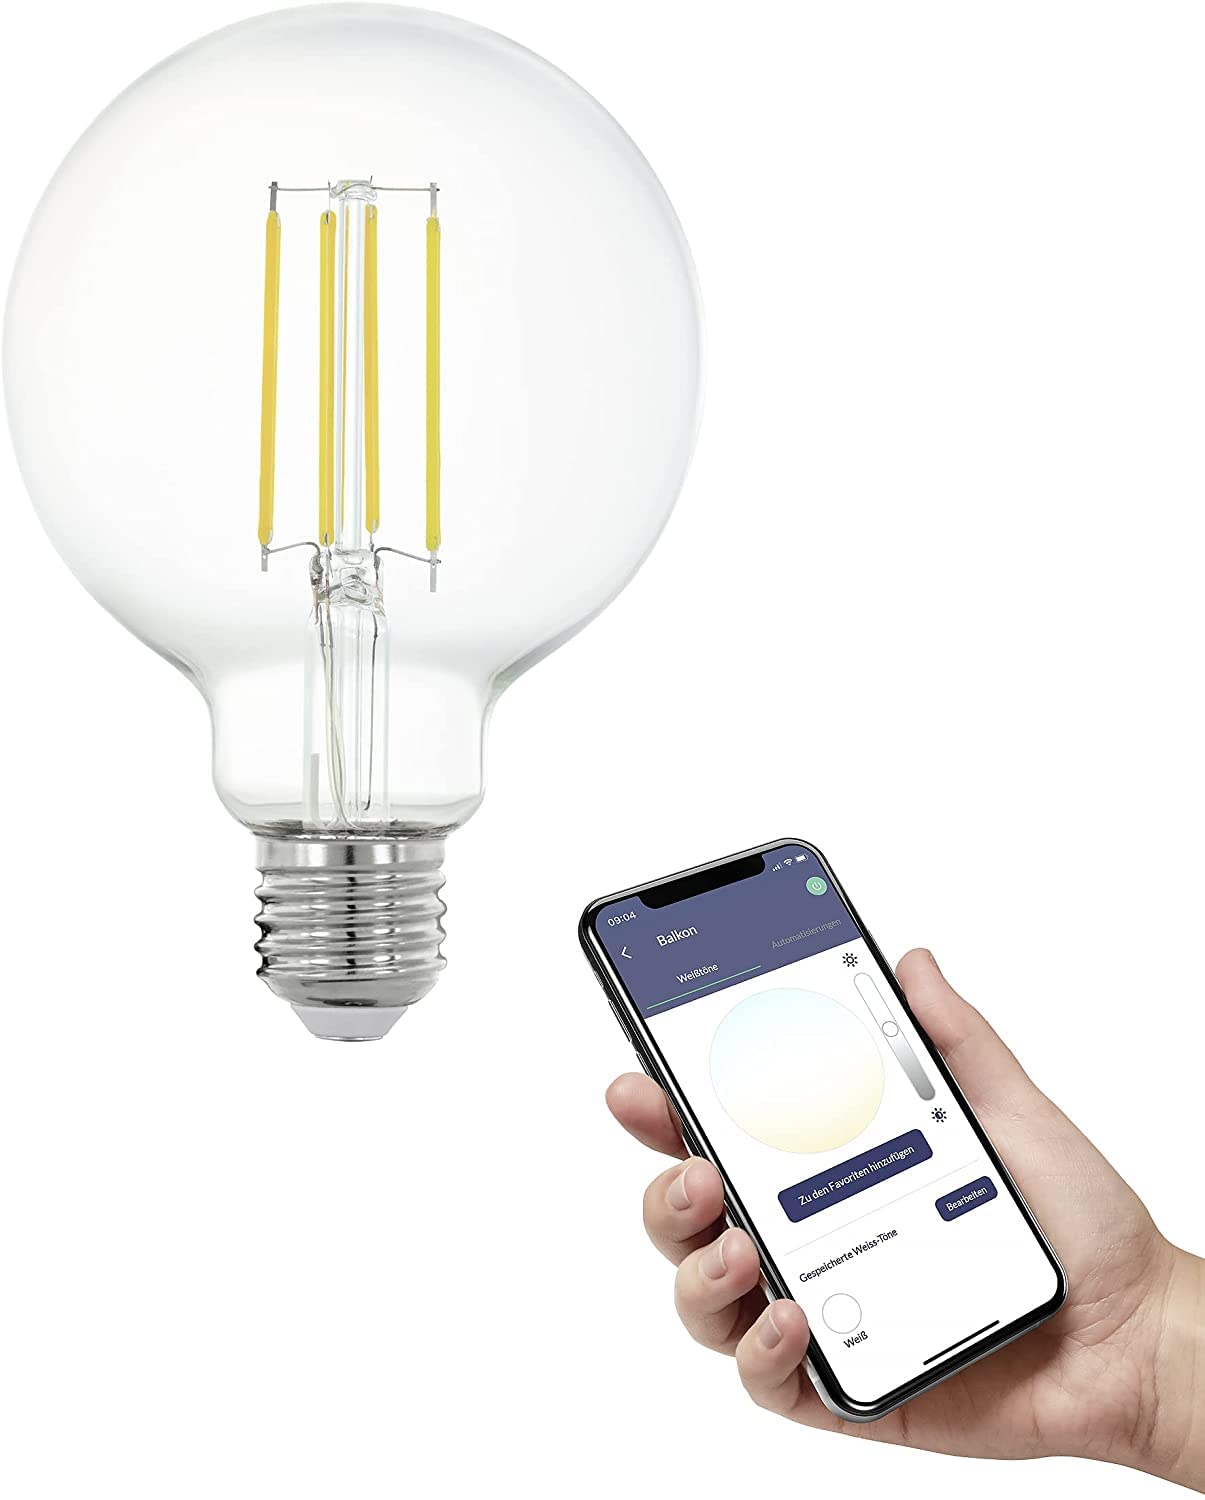 EGLO connect.z Smart-Home LED Leuchtmittel E27, G95, ZigBee, App und Sprachsteuerung Alexa, dimmbar, neutralweiß, 806 Lumen, 6 Watt, Vintage-Glühbirne klar